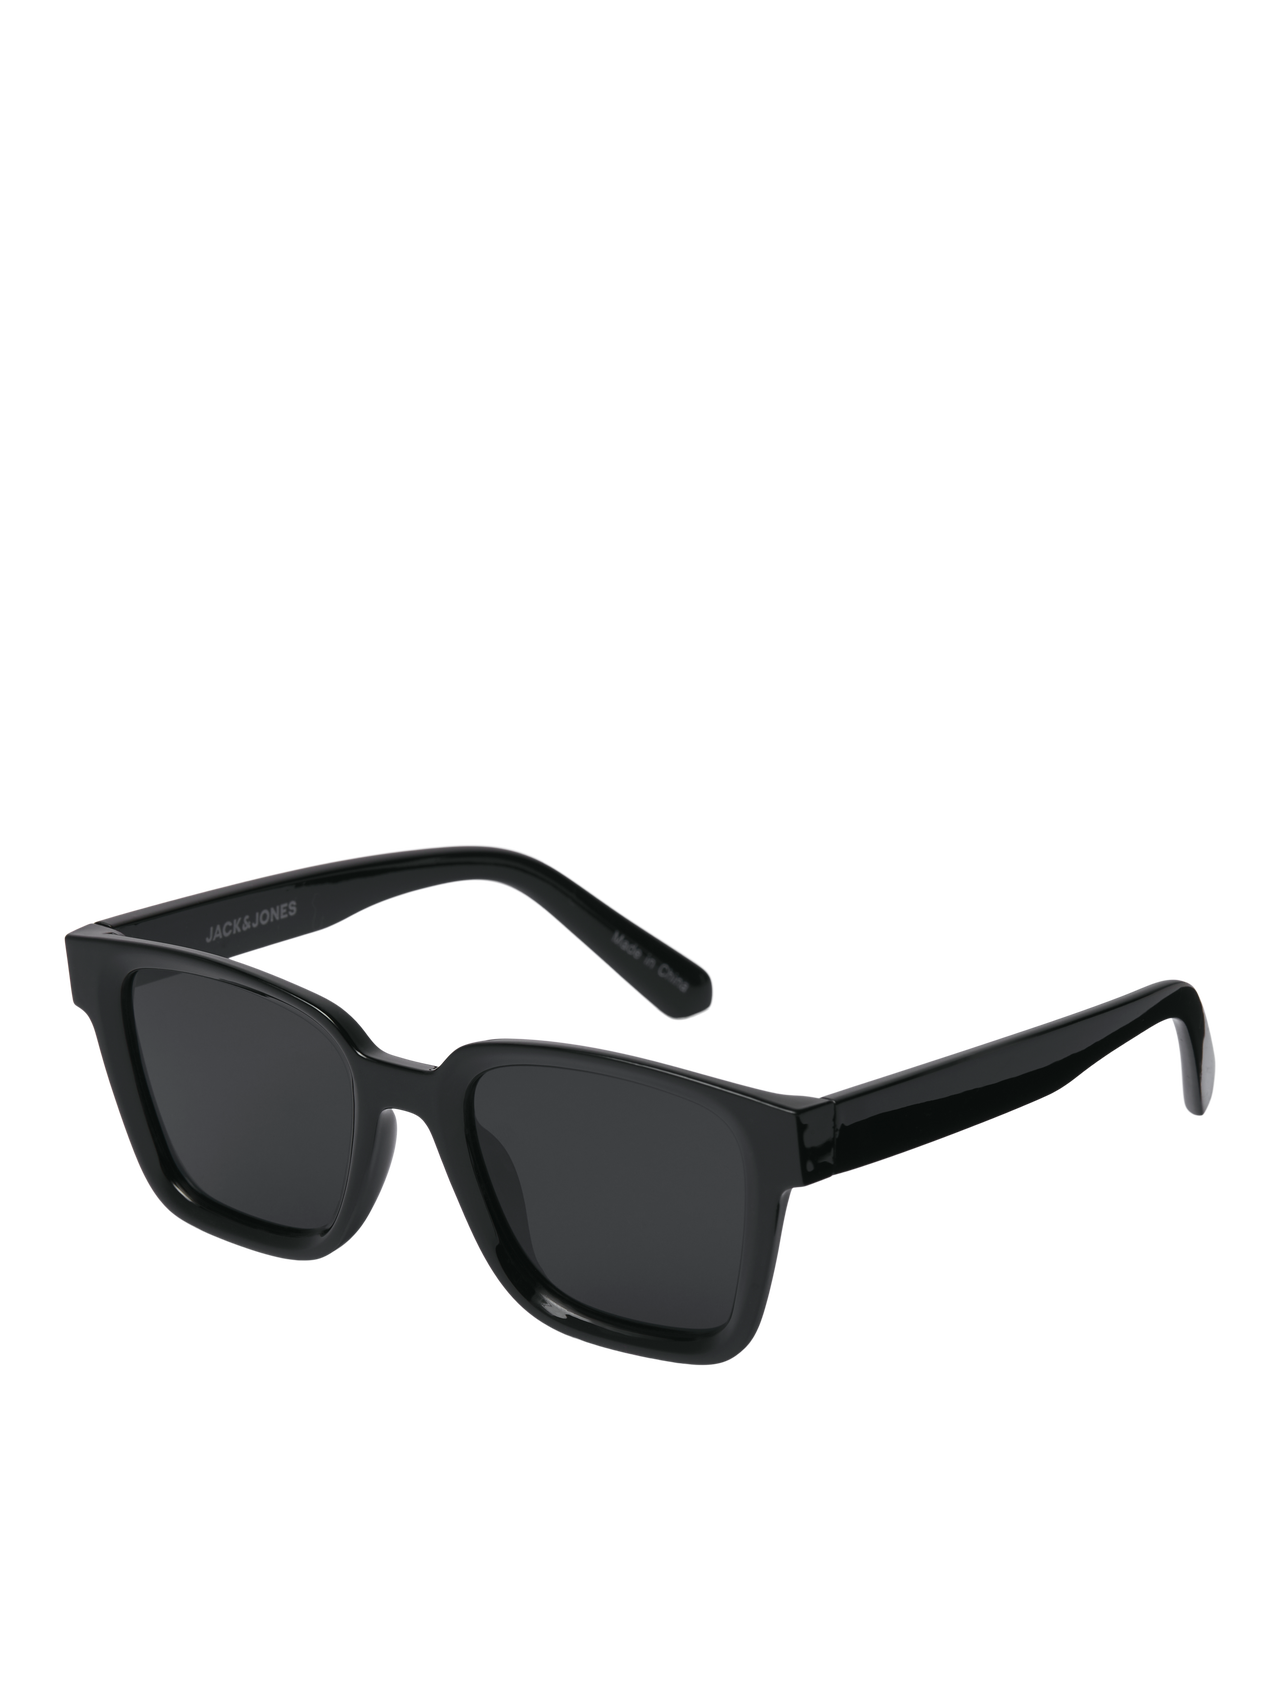 Jack & Jones Plast Rektagulära solglasögon -Black - 12251480